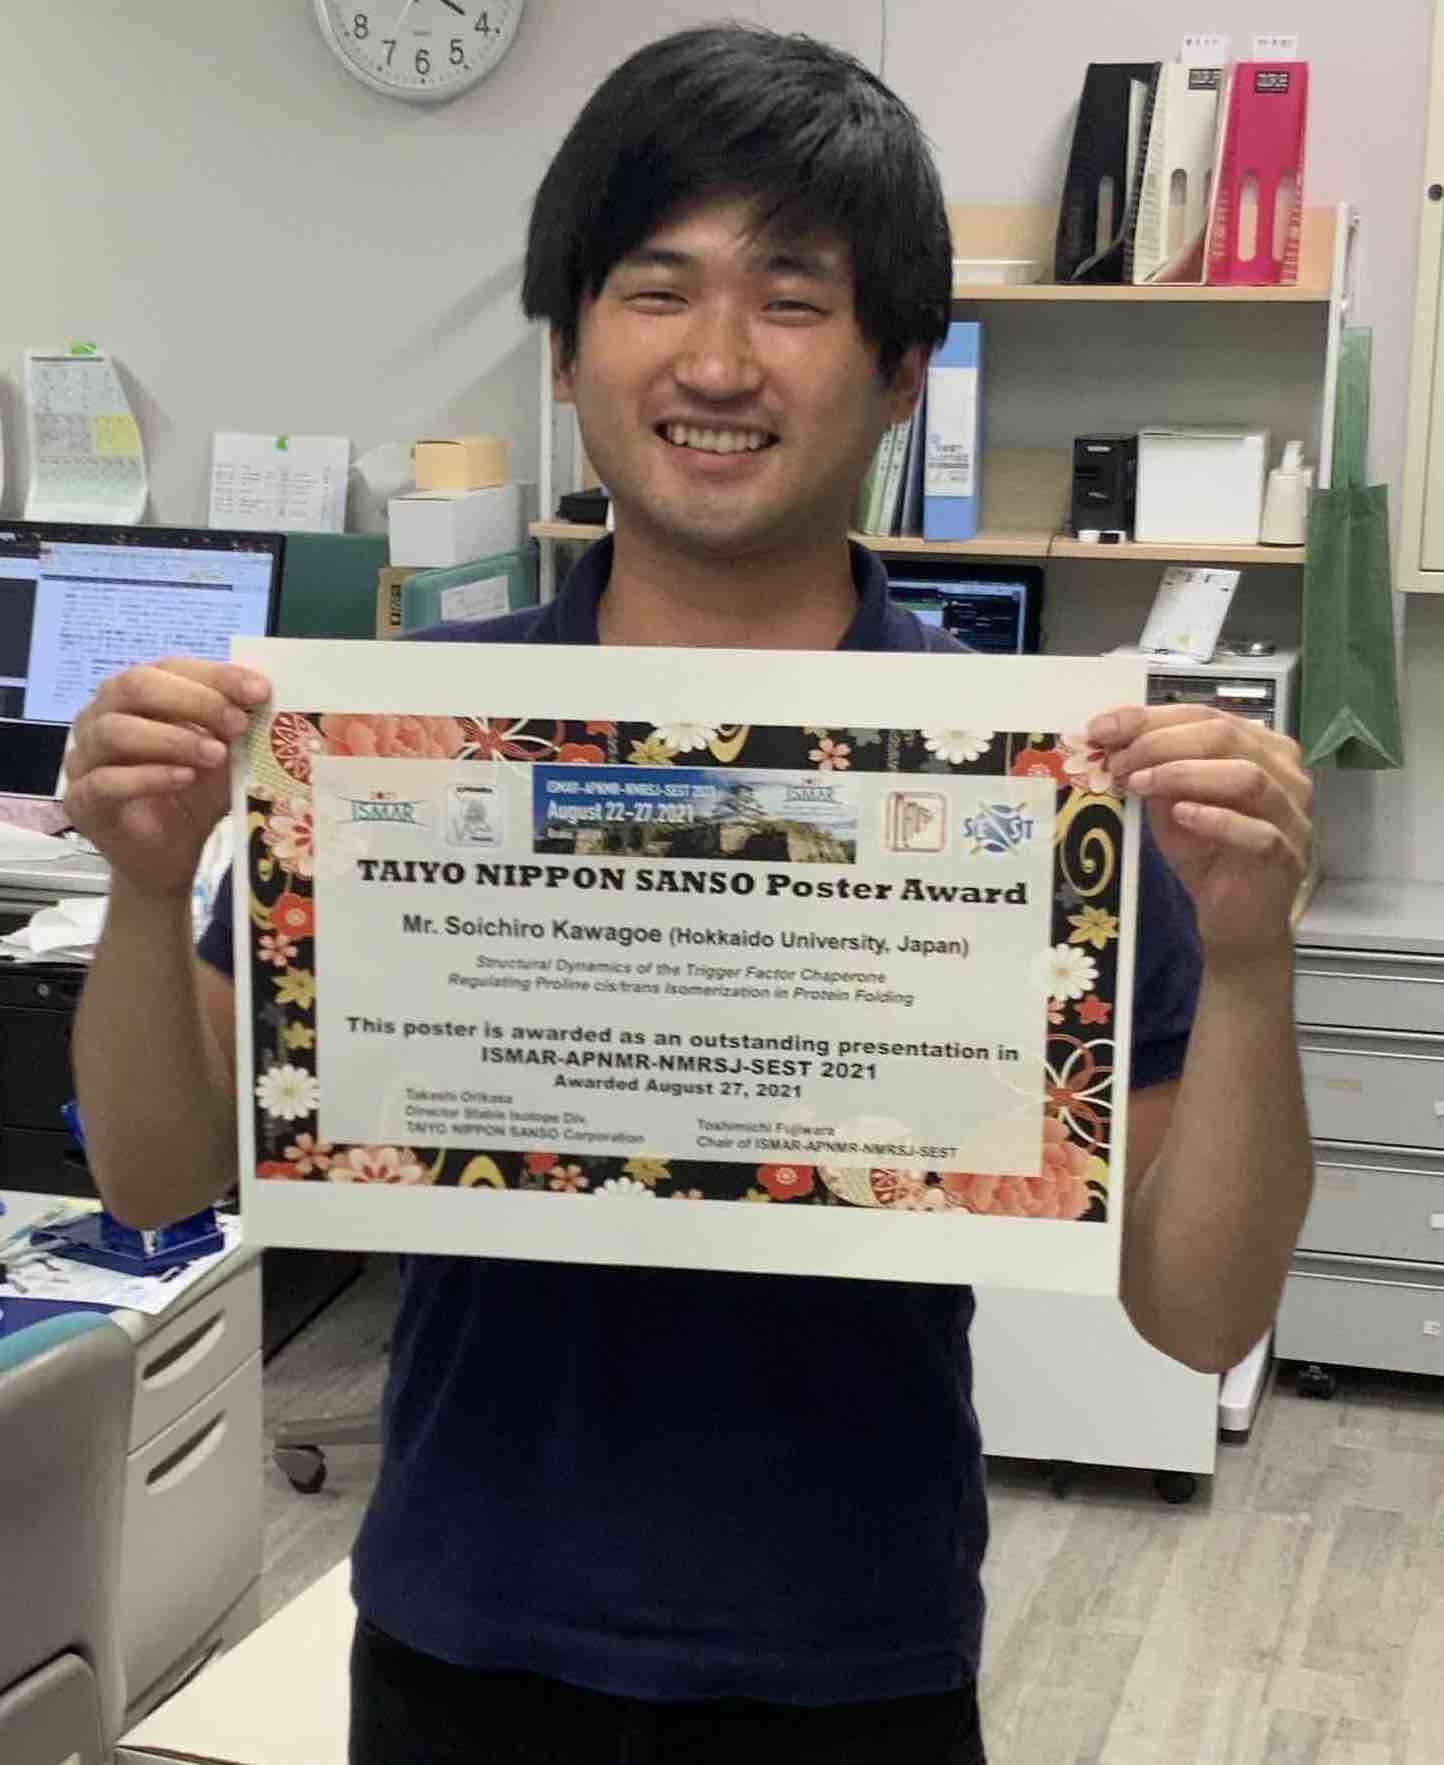 大学院生の川越　聡一郎 さんがISMAR-APNMR2021で “Taiyo Nippon Sanso Poster Award” を受賞しました。